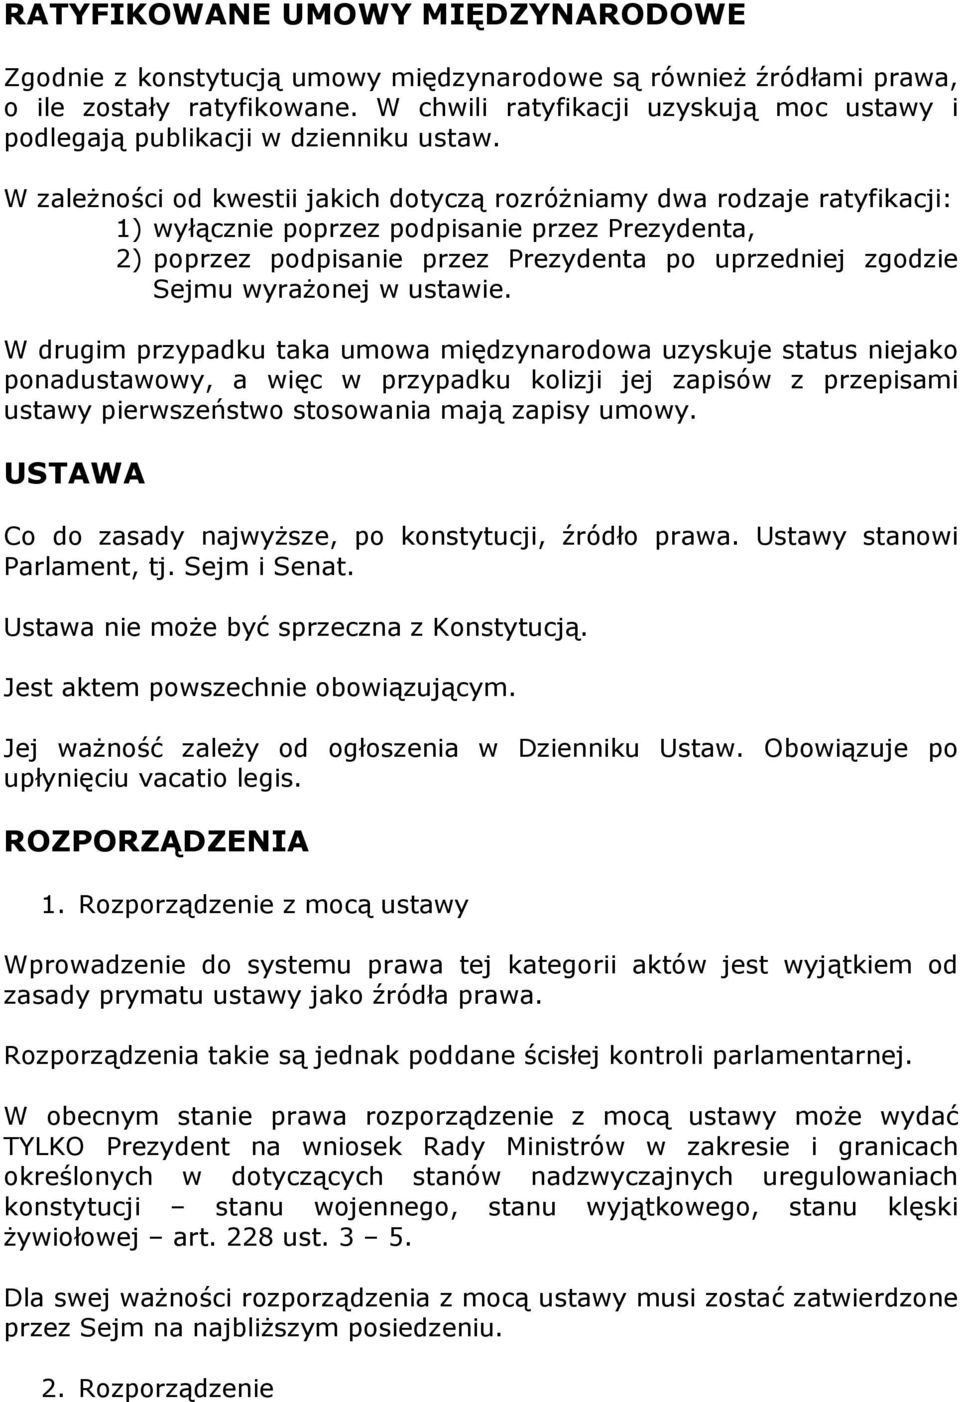 W zależności od kwestii jakich dotyczą rozróżniamy dwa rodzaje ratyfikacji: 1) wyłącznie poprzez podpisanie przez Prezydenta, 2) poprzez podpisanie przez Prezydenta po uprzedniej zgodzie Sejmu